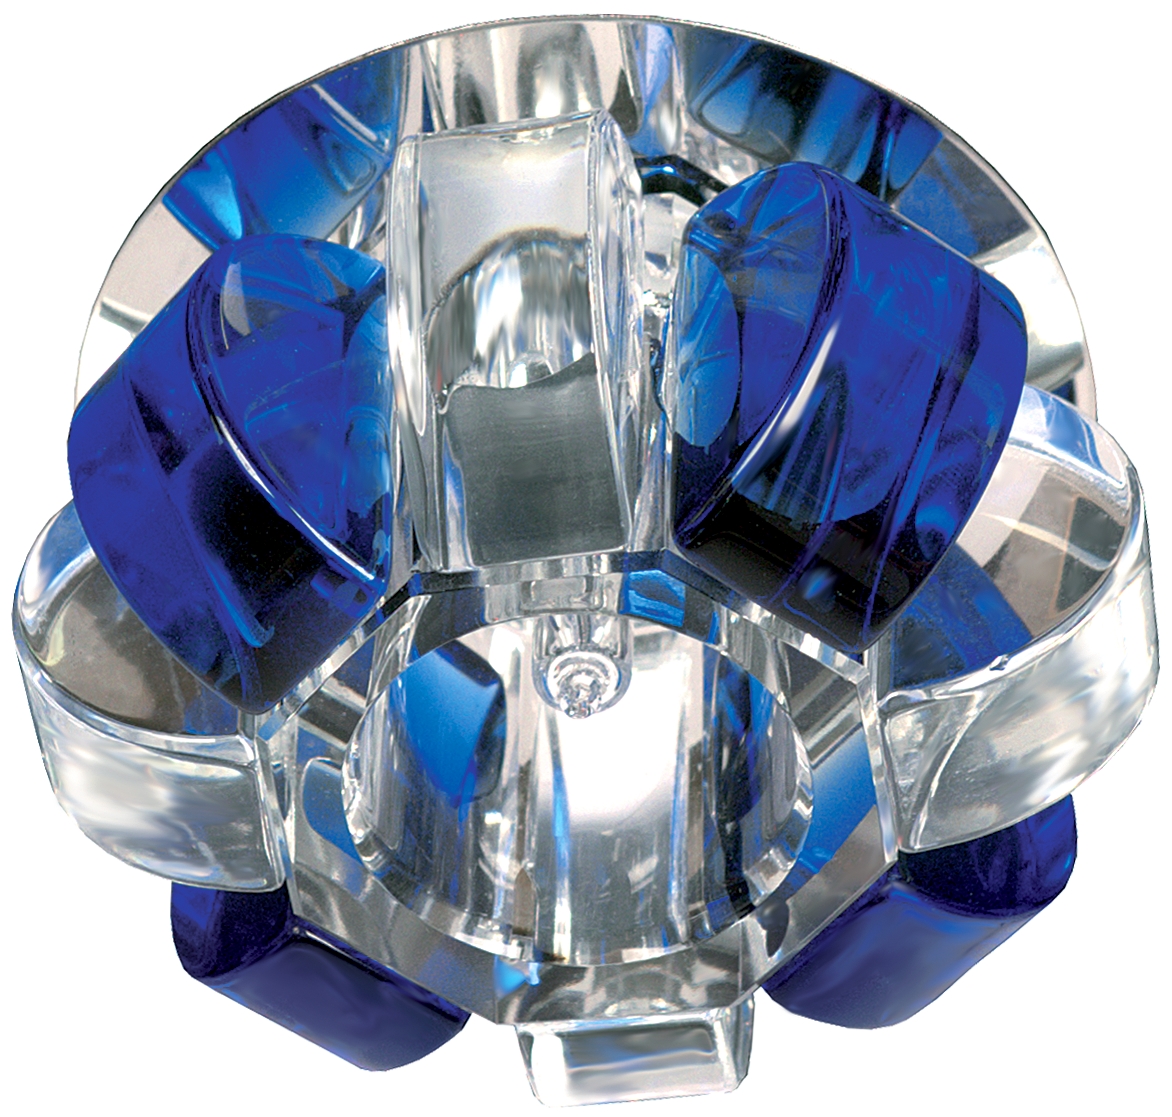 Светильник ЭРА DK31 CH/WH/BL декор "корона" G9,40W,220V, JCD хром/прозрачный/синий